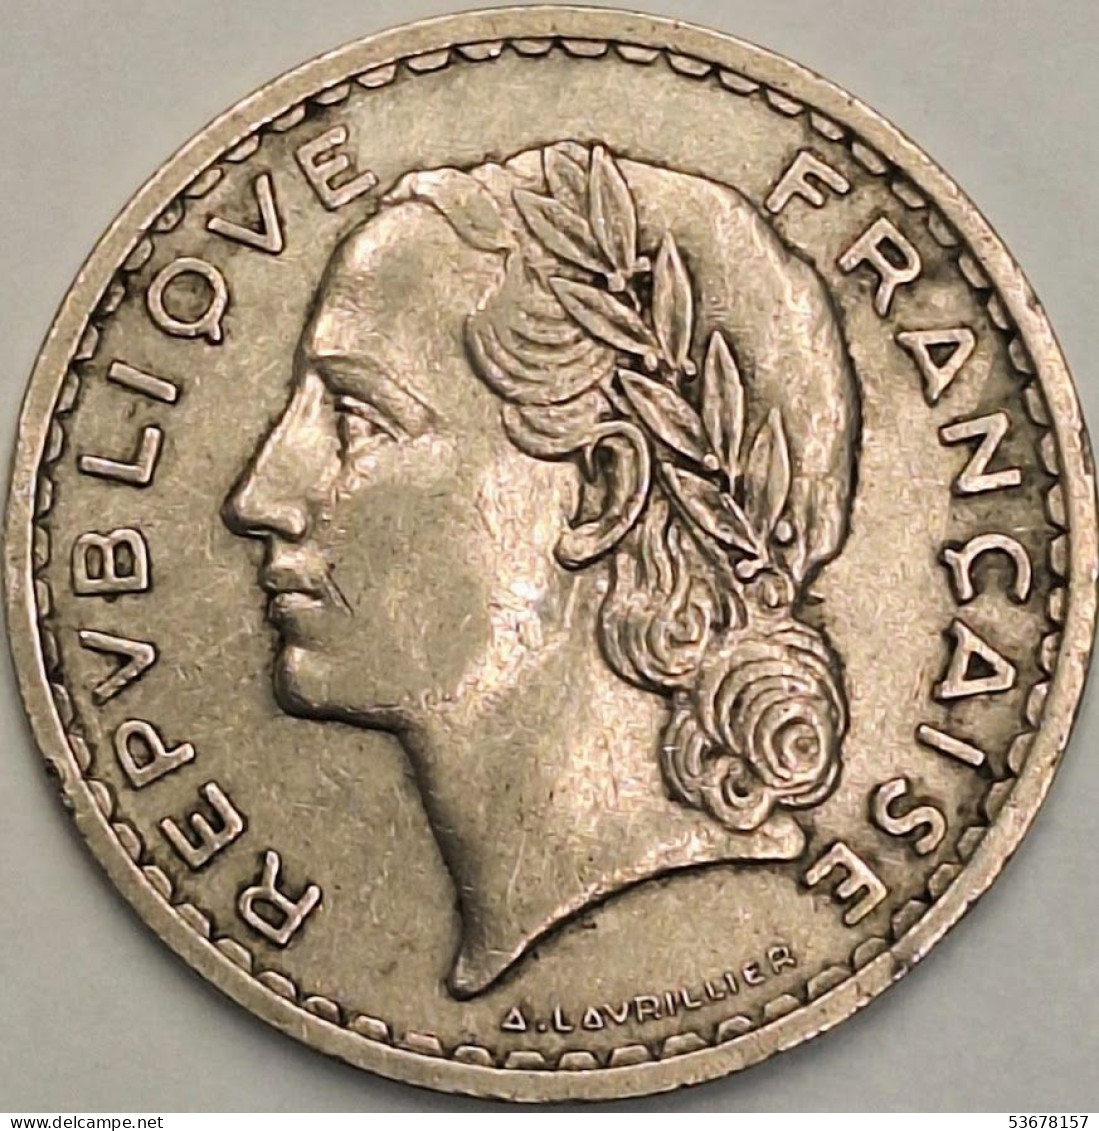 France - 5 Francs 1935, KM# 888 (#4119) - 5 Francs